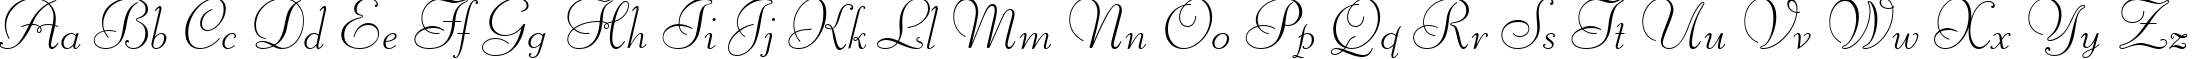 Пример написания английского алфавита шрифтом Liberty BT